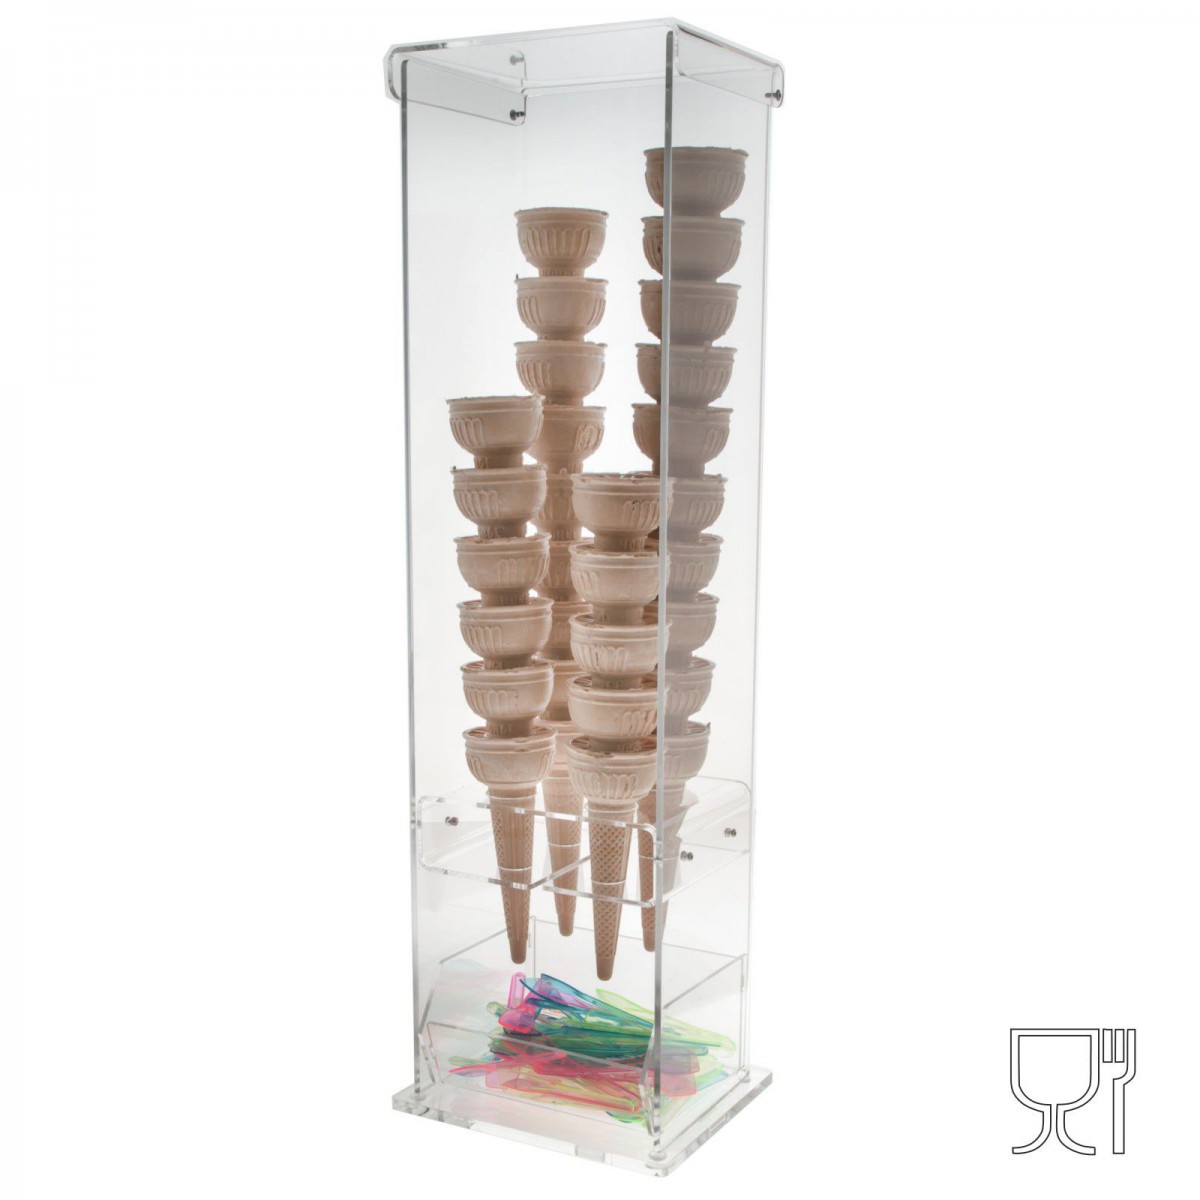 Porta coni gelato in plexiglass trasparente con vaschetta porta cucchiaini a 4 fori - Misure: 16 x 1